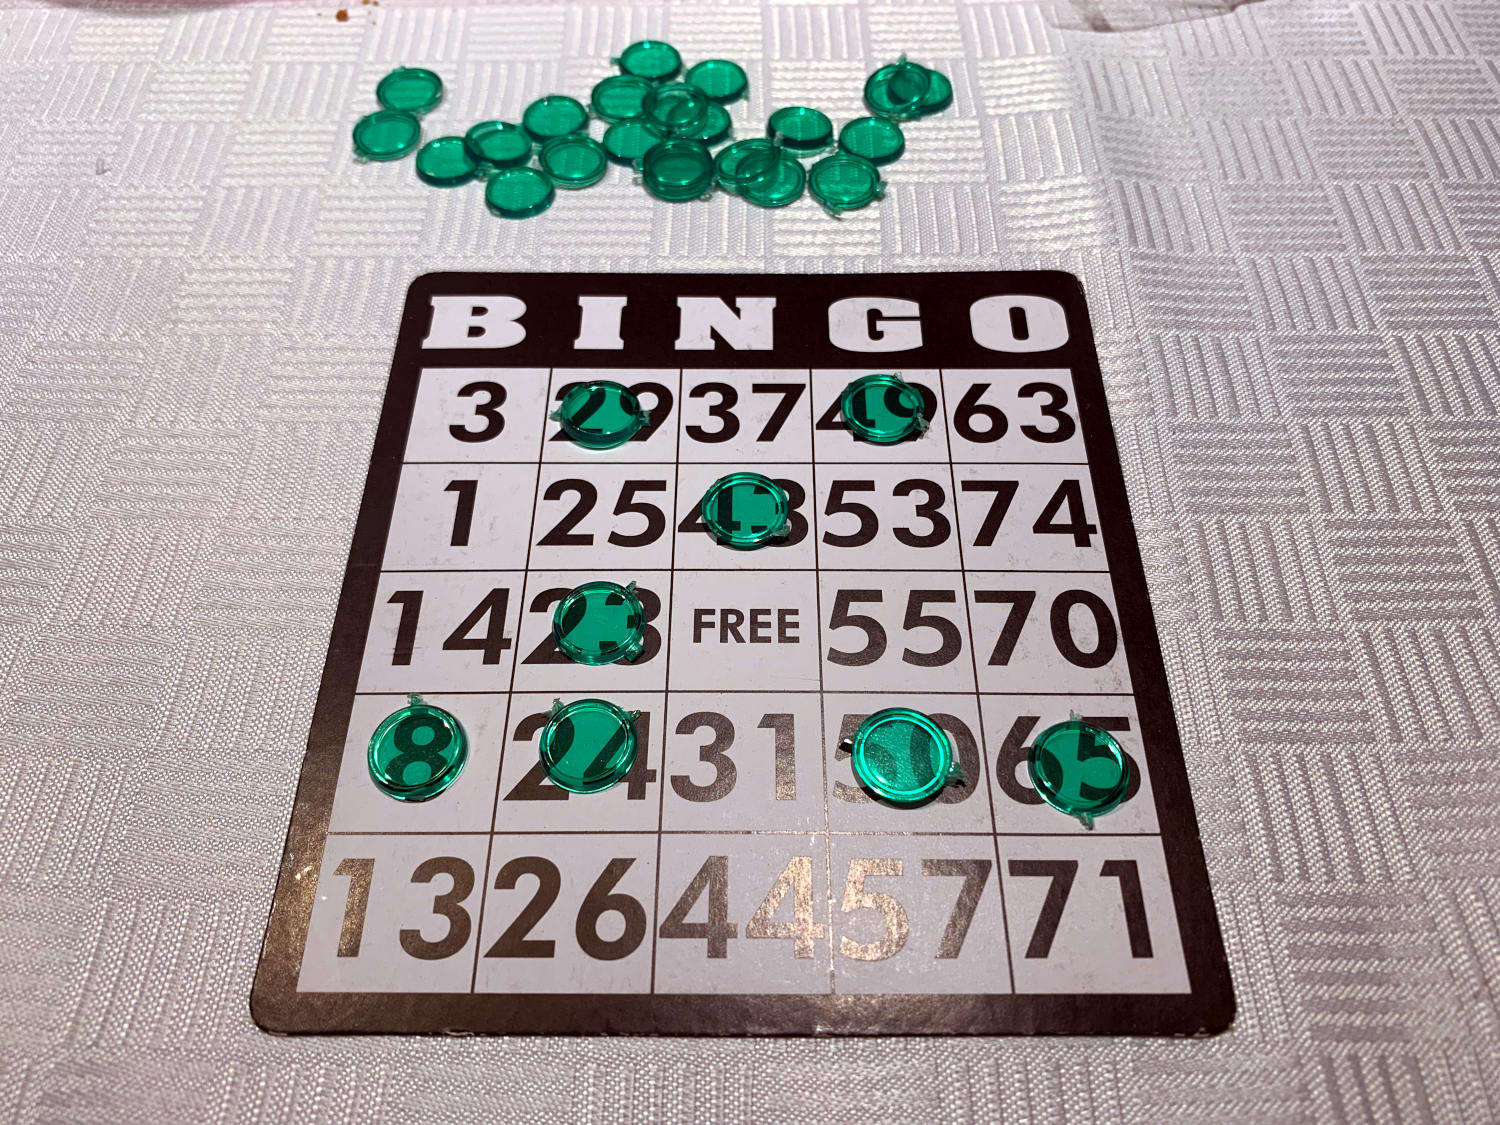 Bingo-Karte mit einigen markierten Zahlen